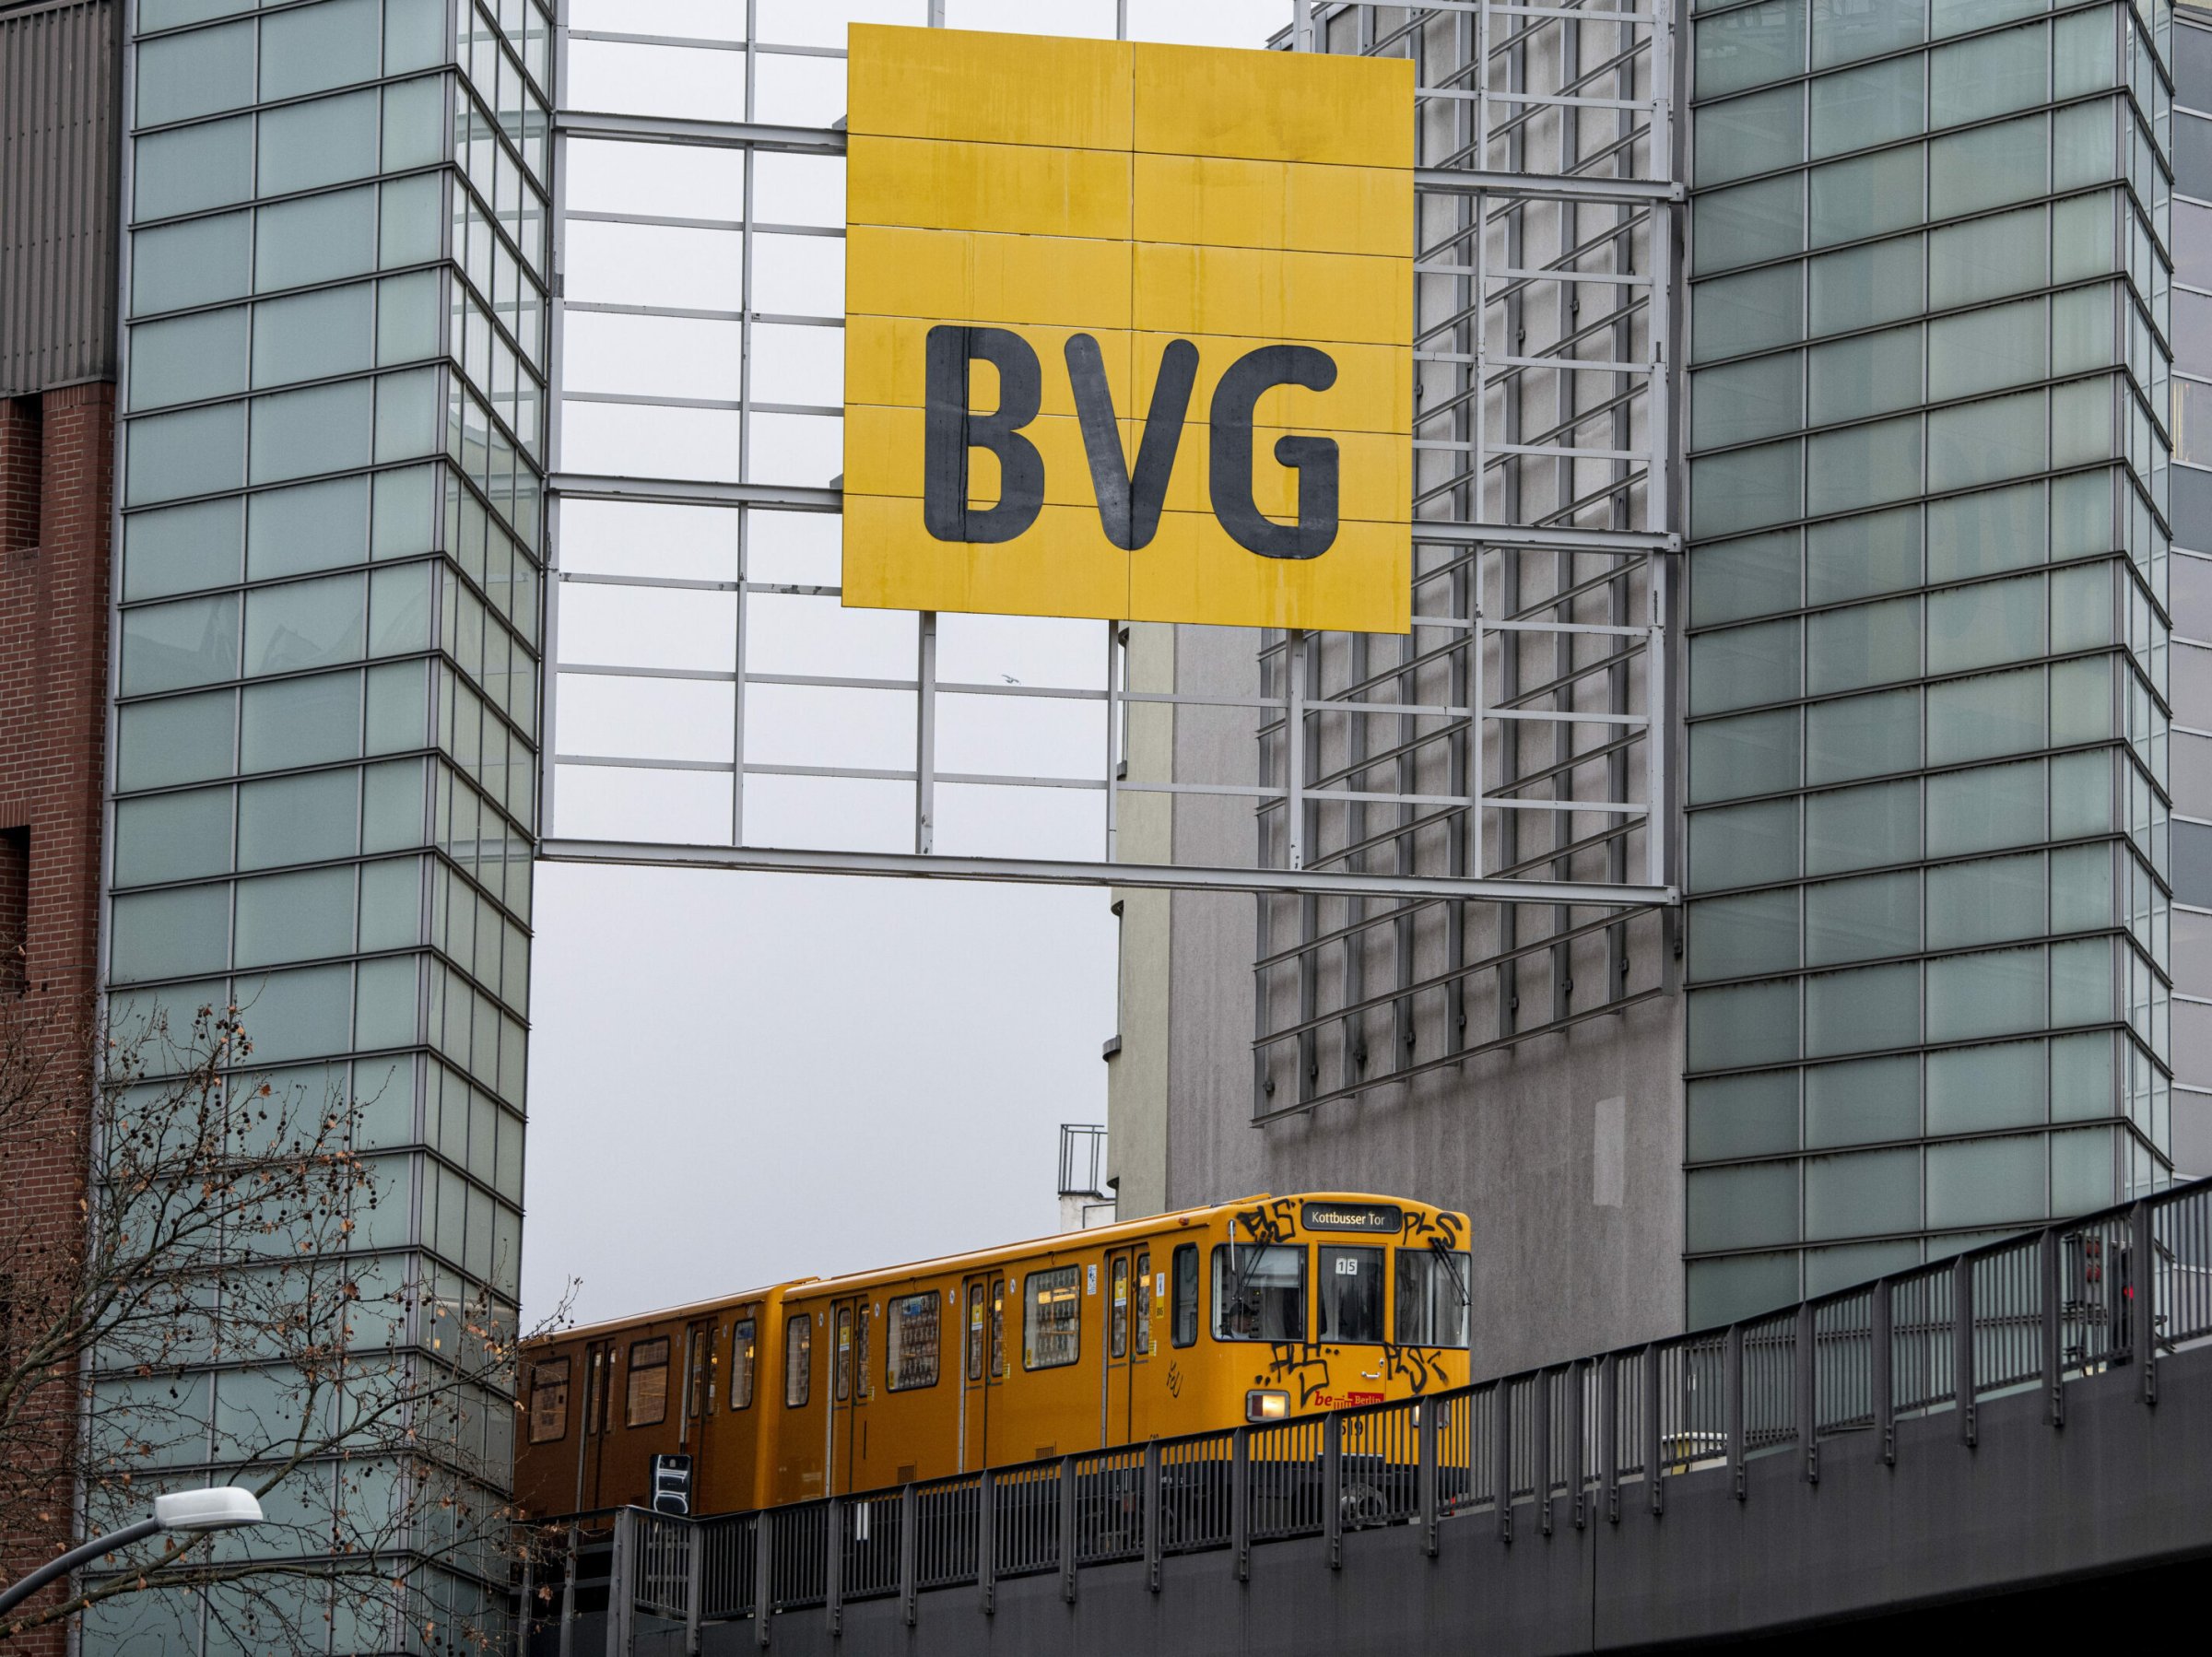 Transports publics : chaos BVG à Berlin : aucune amélioration en vue